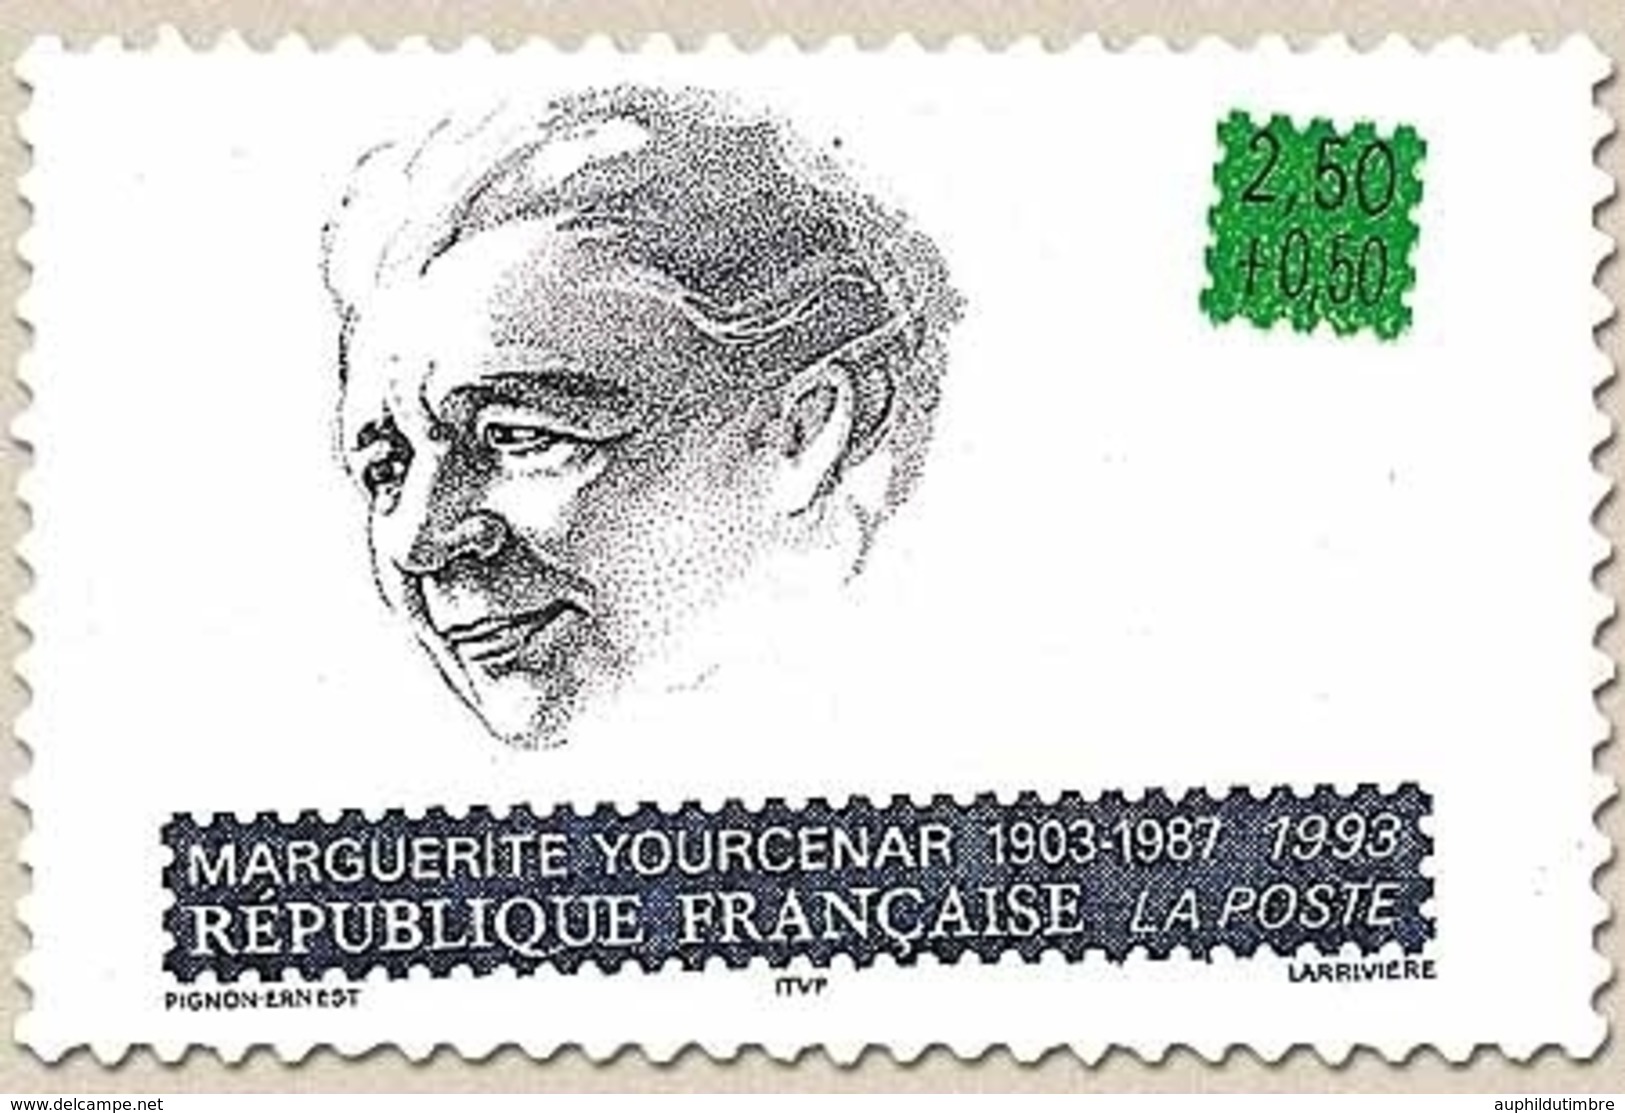 Personnages Célèbres. Ecrivains Français. Marguerite Yourcenar (1903-1987)  2f.50 + 50c. Bleu, Vert Et Noir Y2804 - Ongebruikt